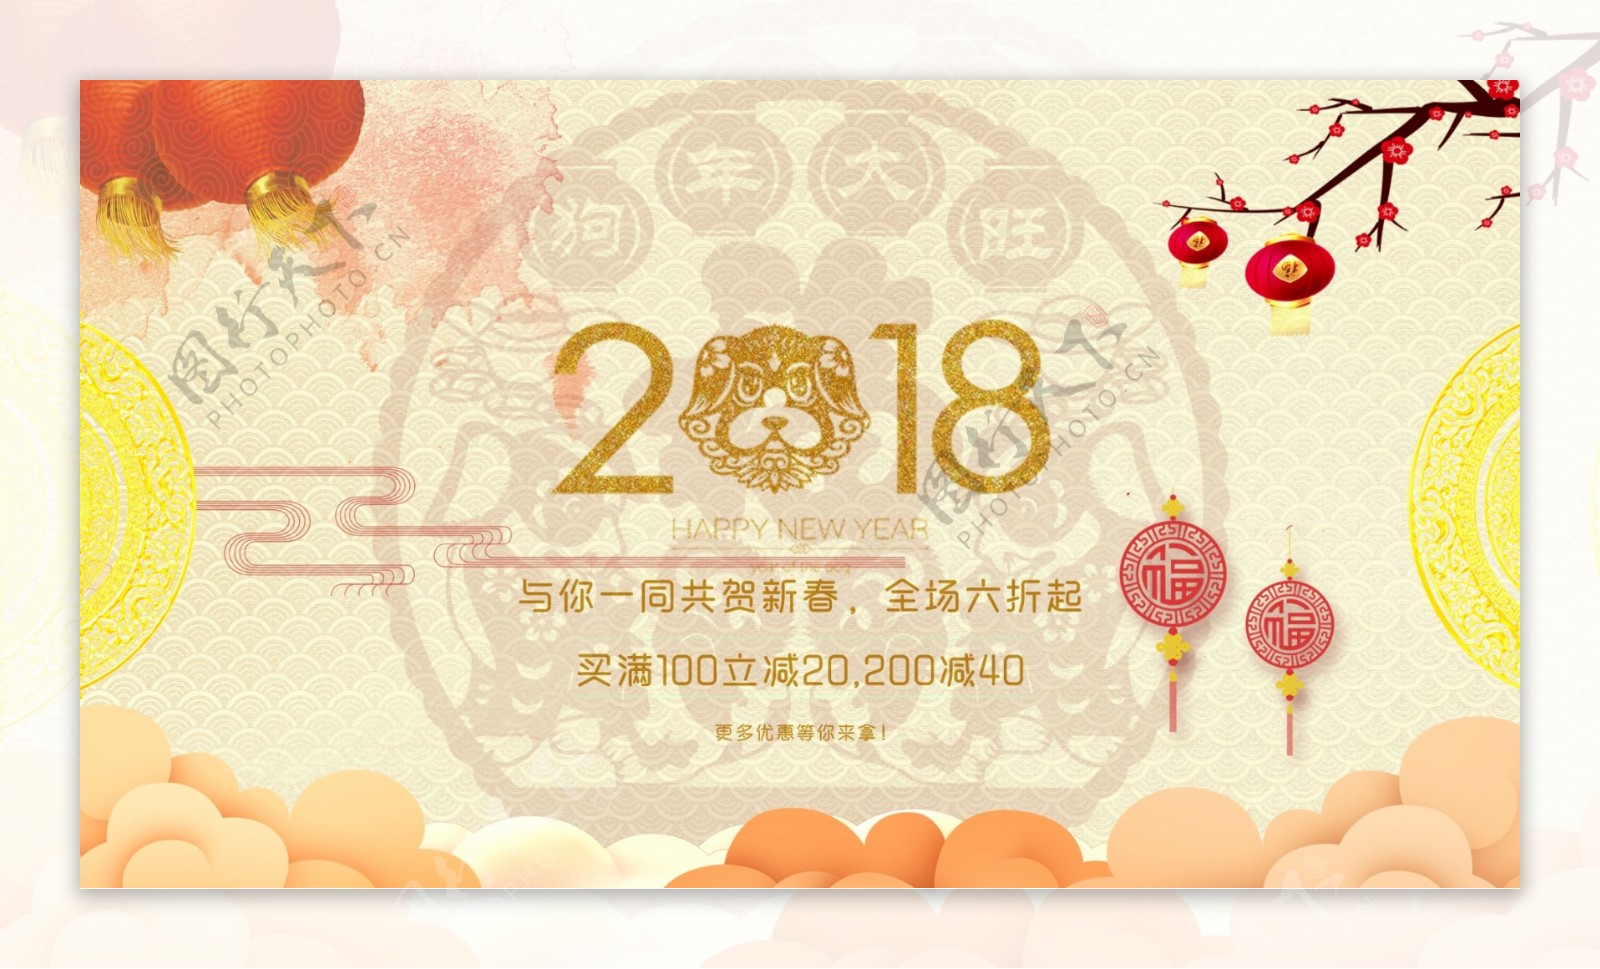 2018狗年新春活动宣传海报